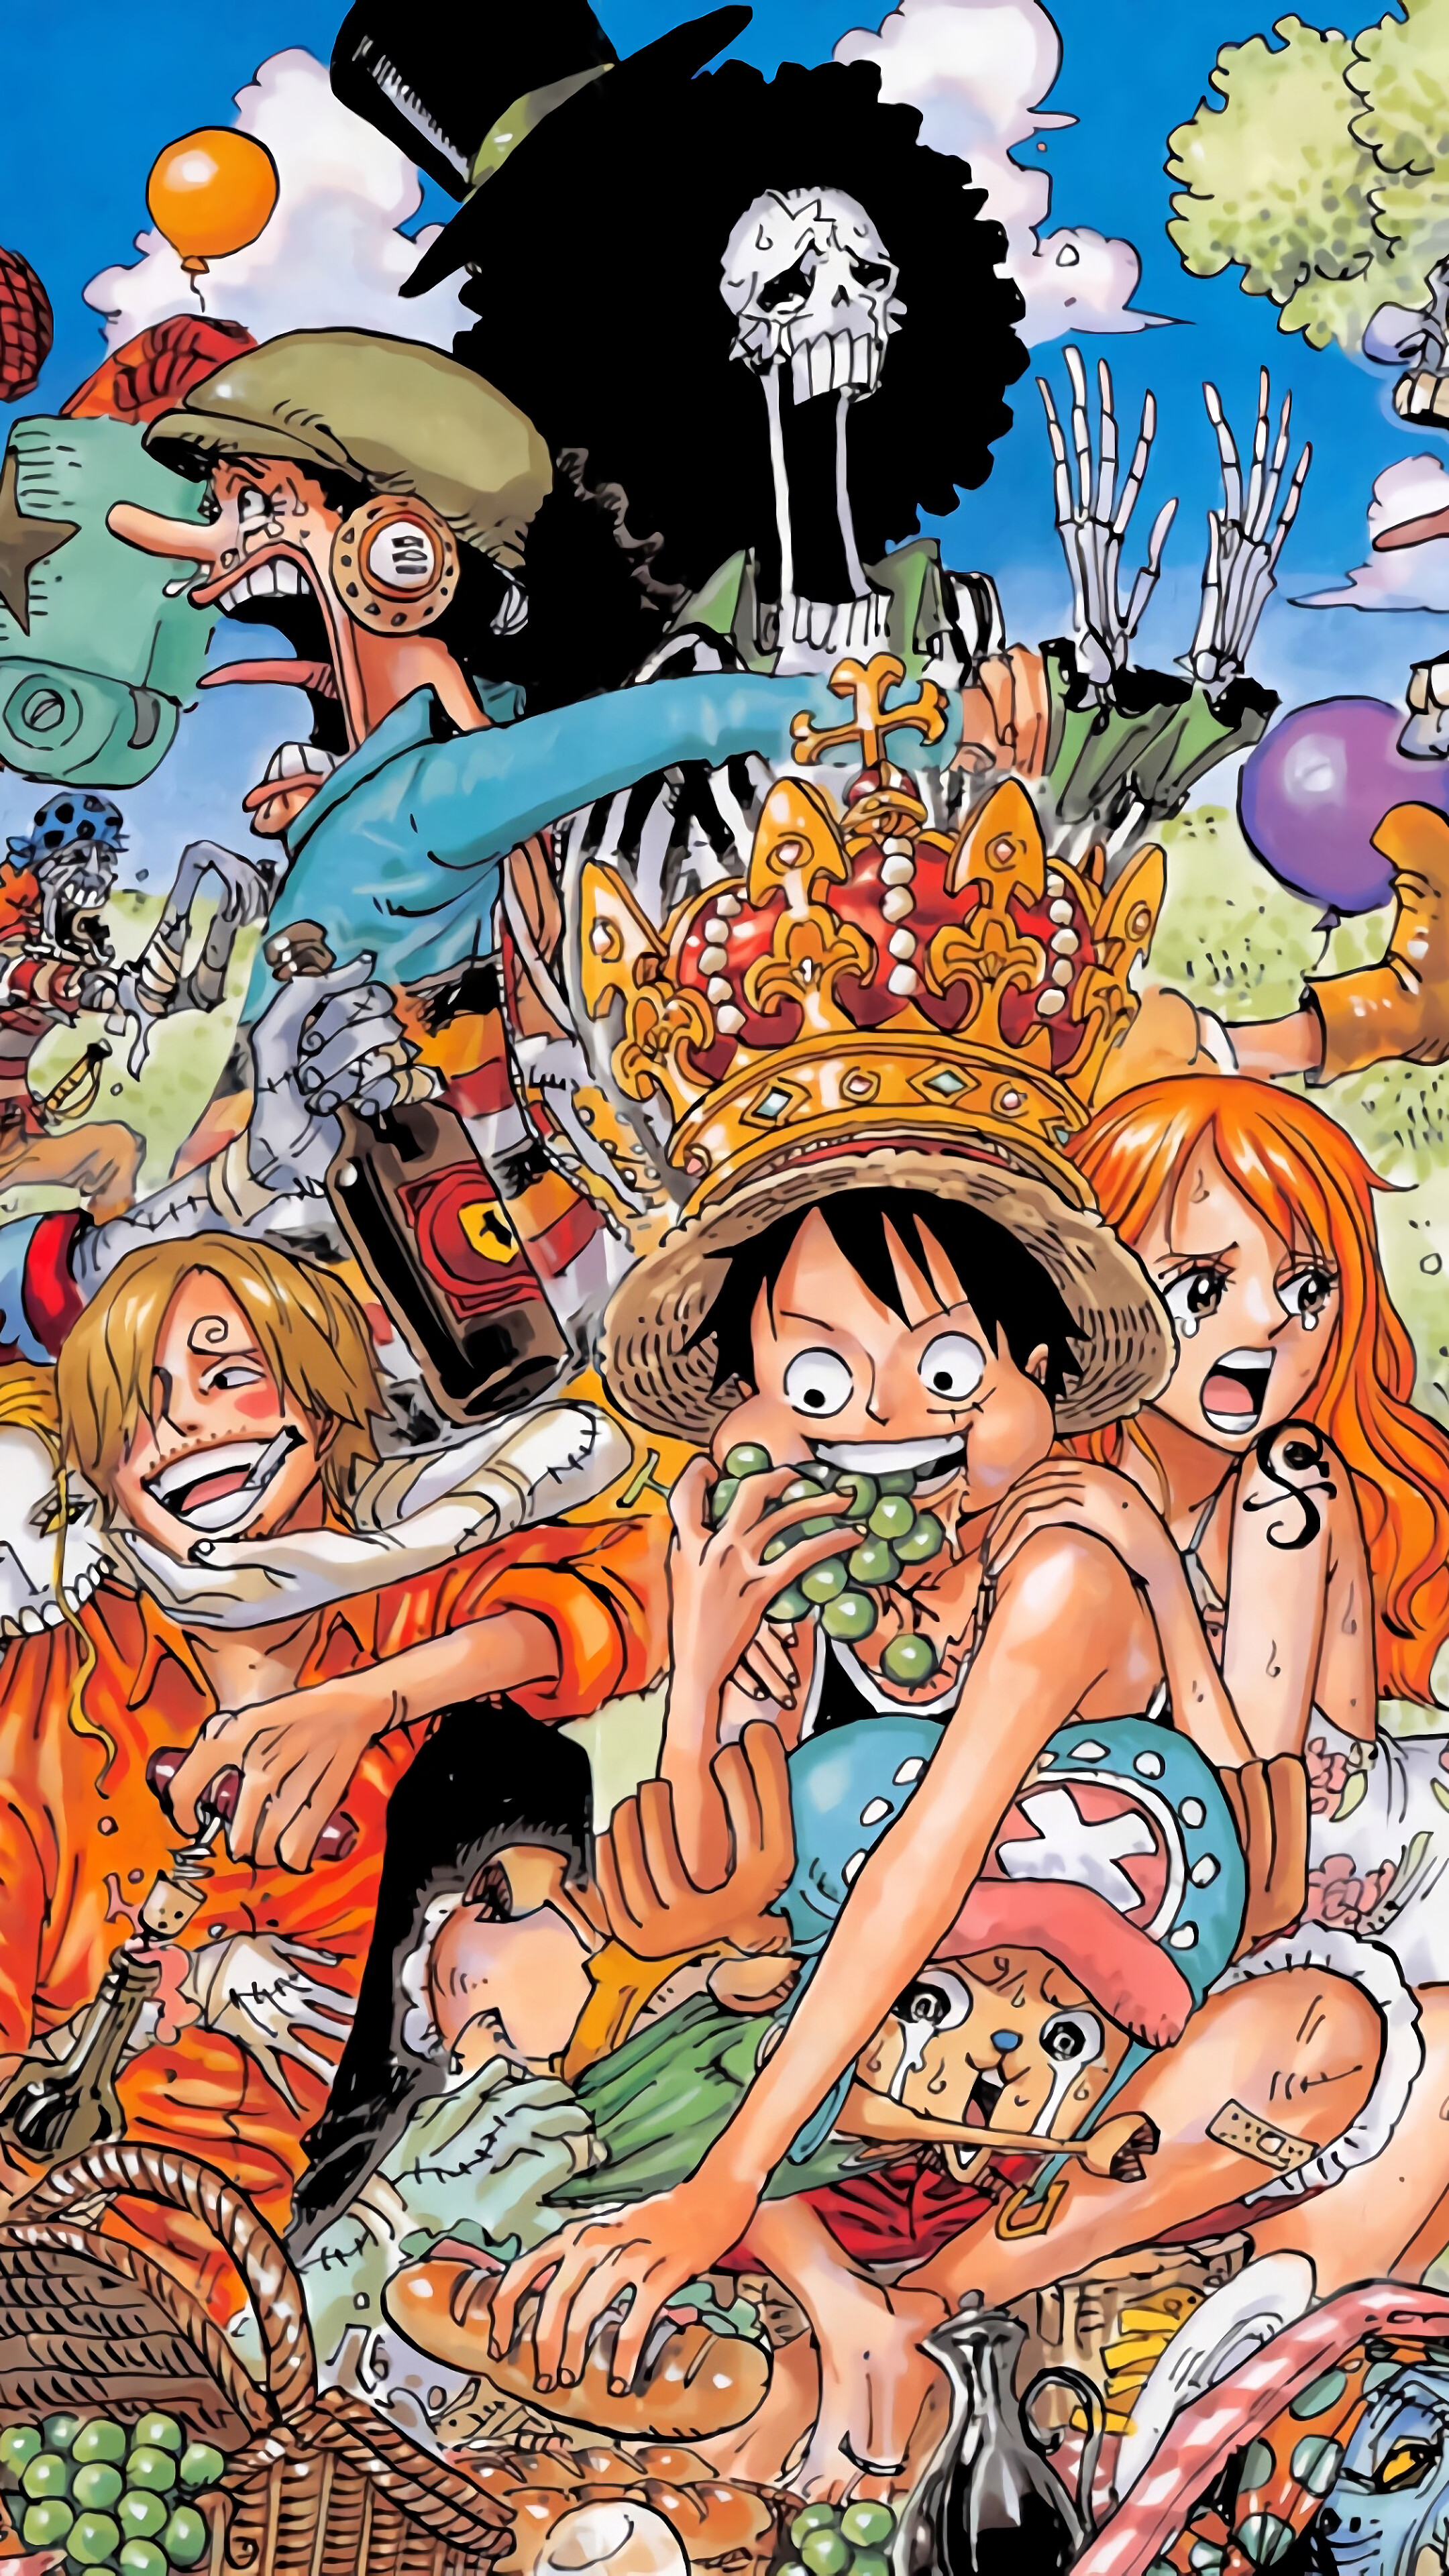 Tải 999 Hình Nền One Piece Cho Máy Tính Đẹp Nhất 2018  One piece Hình nền  Hình